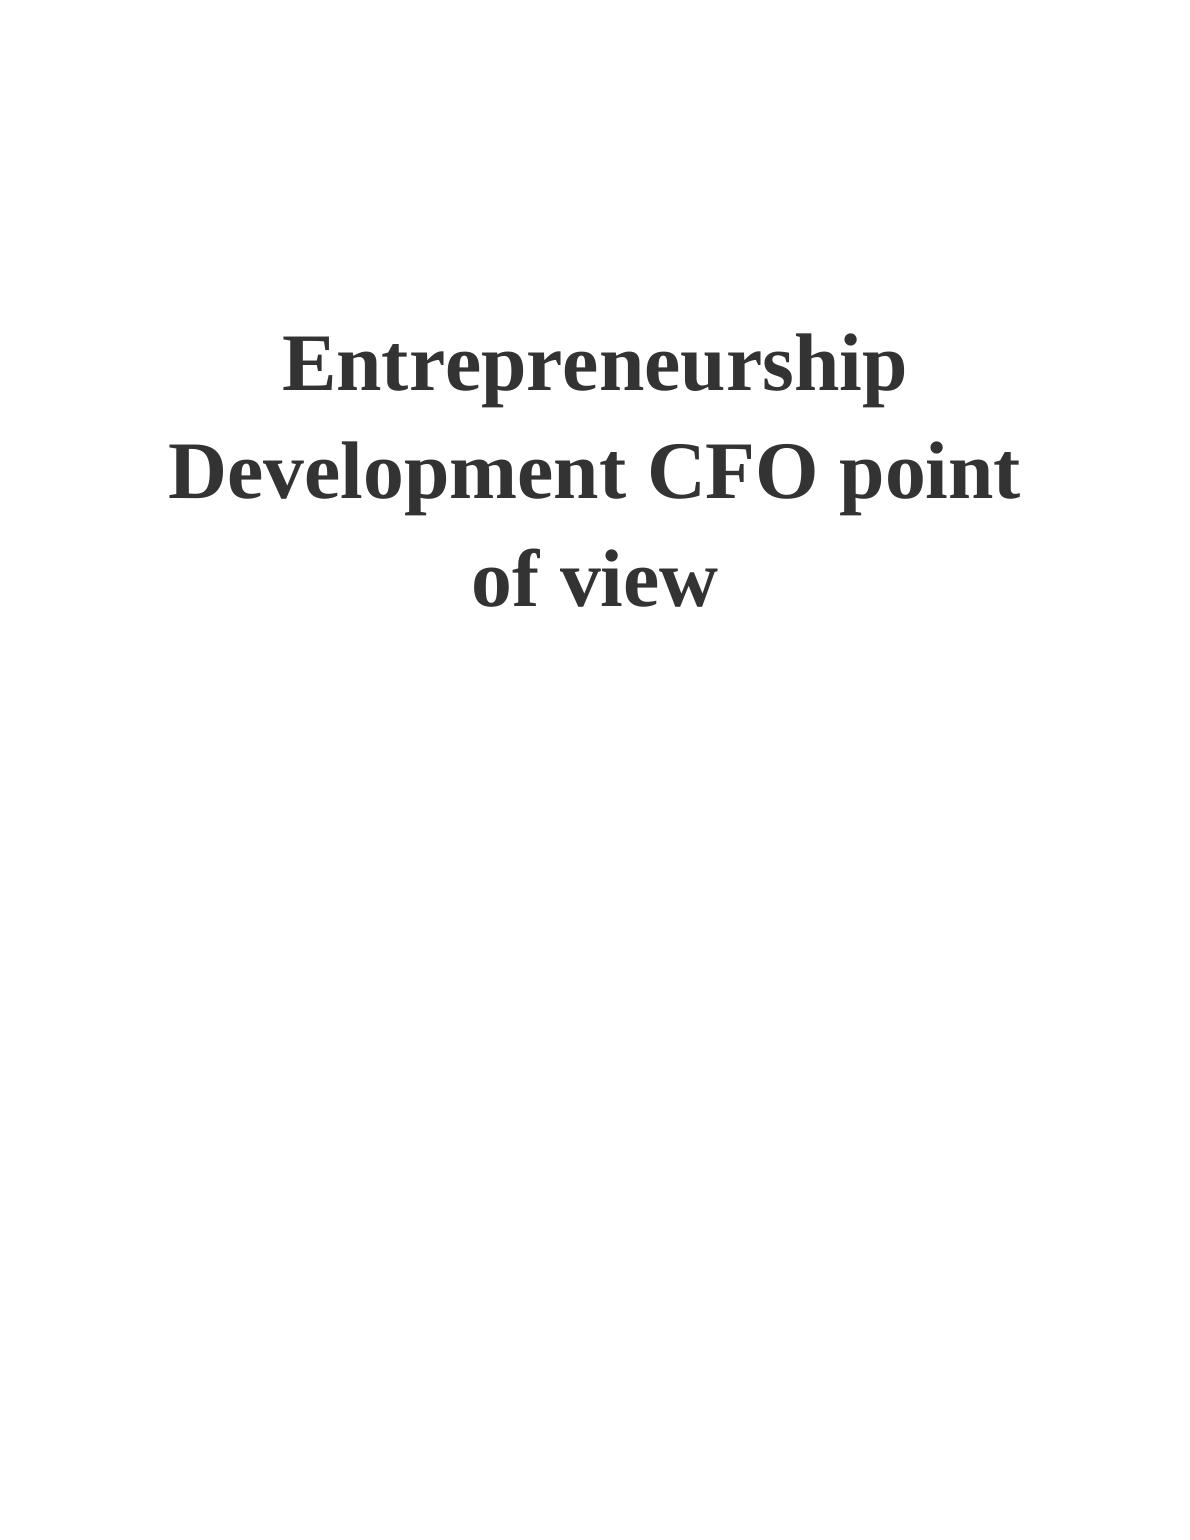 Entrepreneurship Development CFO point of view_1